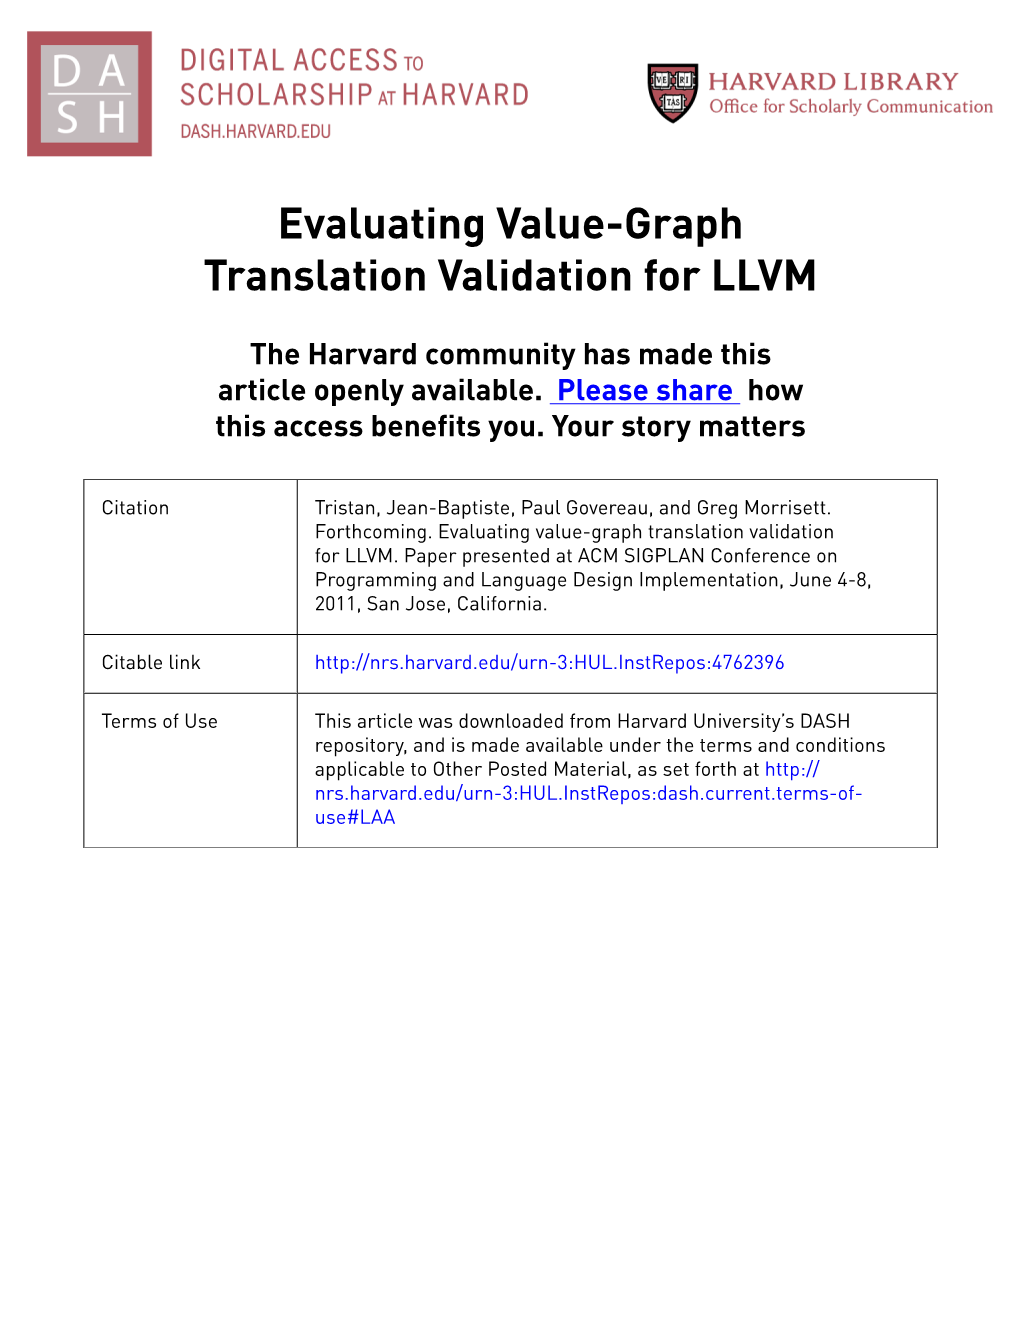 Evaluating Value-Graph Translation Validation for LLVM